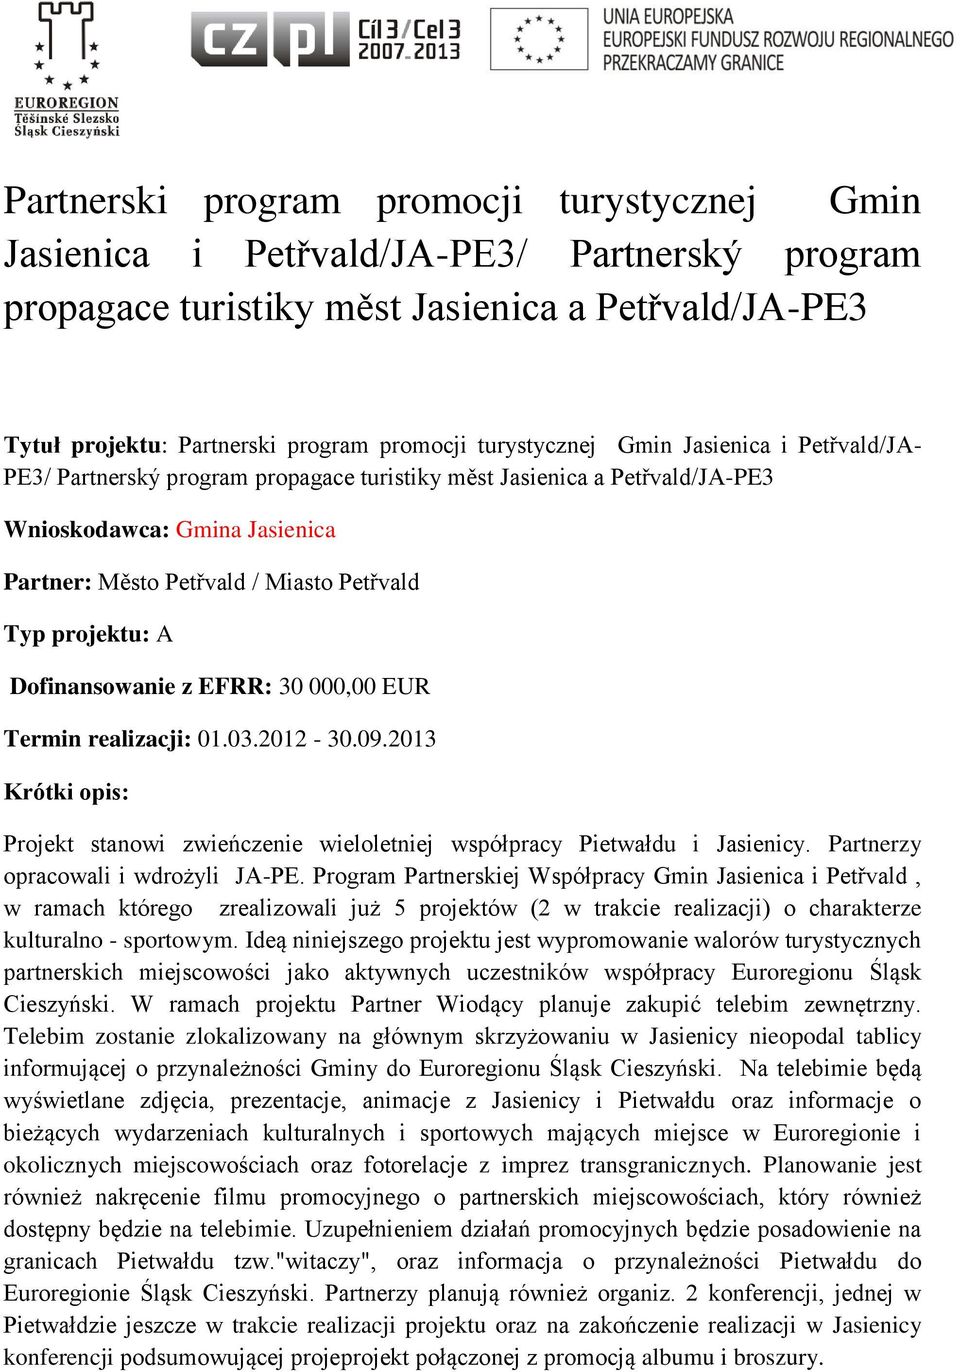 projektu: A Dofinansowanie z EFRR: 30 000,00 EUR Termin realizacji: 01.03.2012-30.09.2013 Projekt stanowi zwieńczenie wieloletniej współpracy Pietwałdu i Jasienicy.